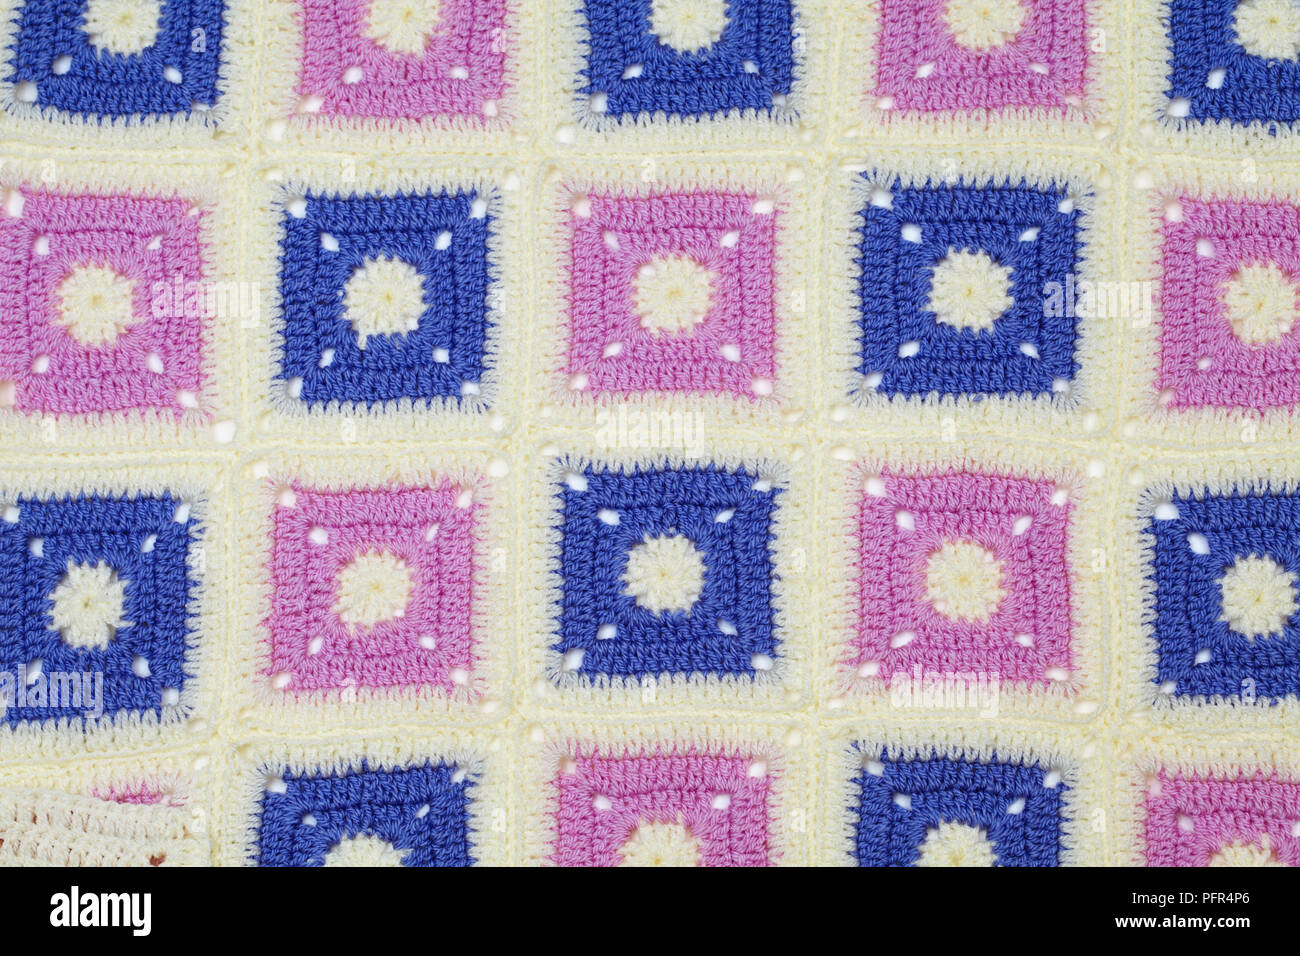 Crocheted patchwork blanket, full frame Stock Photo